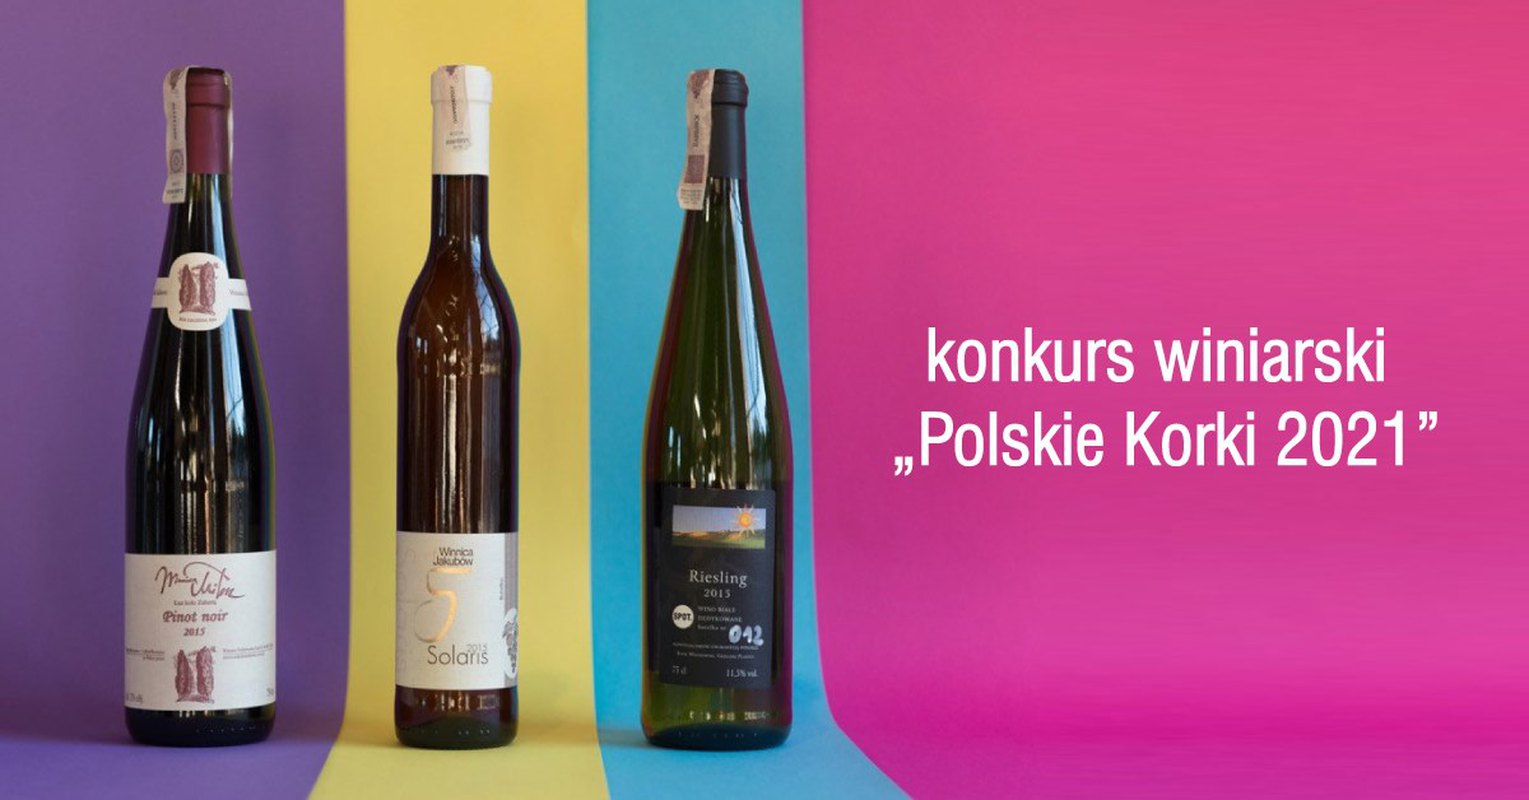 Konkurs Winiarski "Polskie Korki 2021"